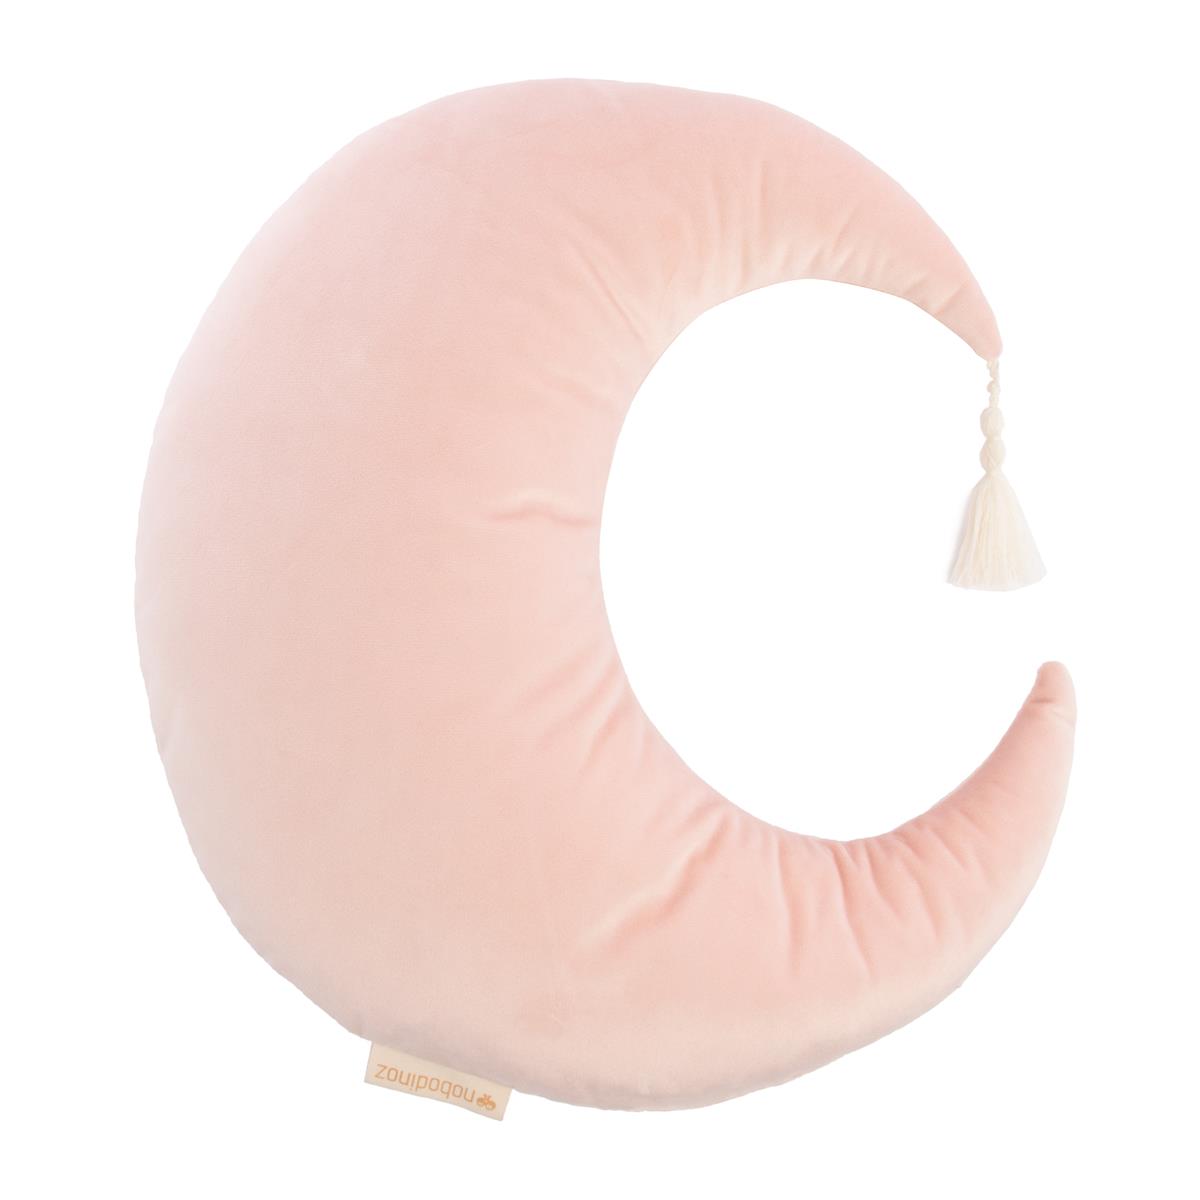 Savanna-pierrot-moon-velvet-cushion-bloom-pink-€22,90